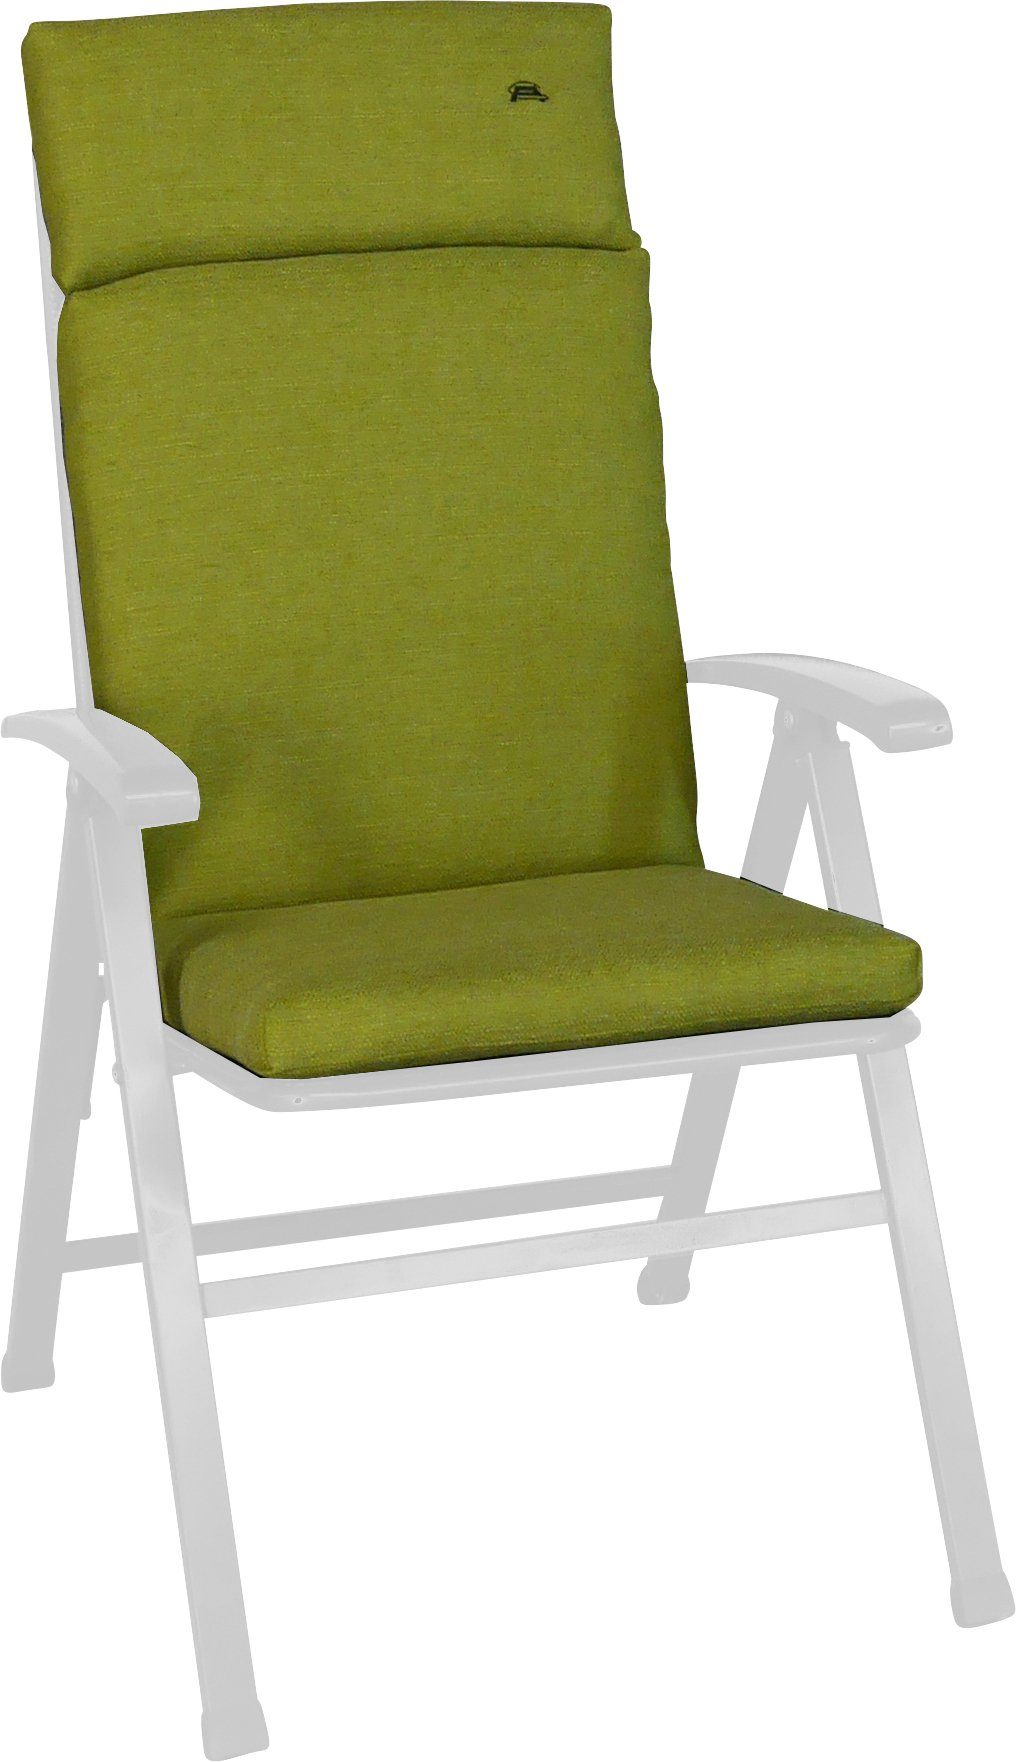 Angerer Freizeitmöbel Sesselauflage Smart, grün (B/T): 47x112 ca. cm